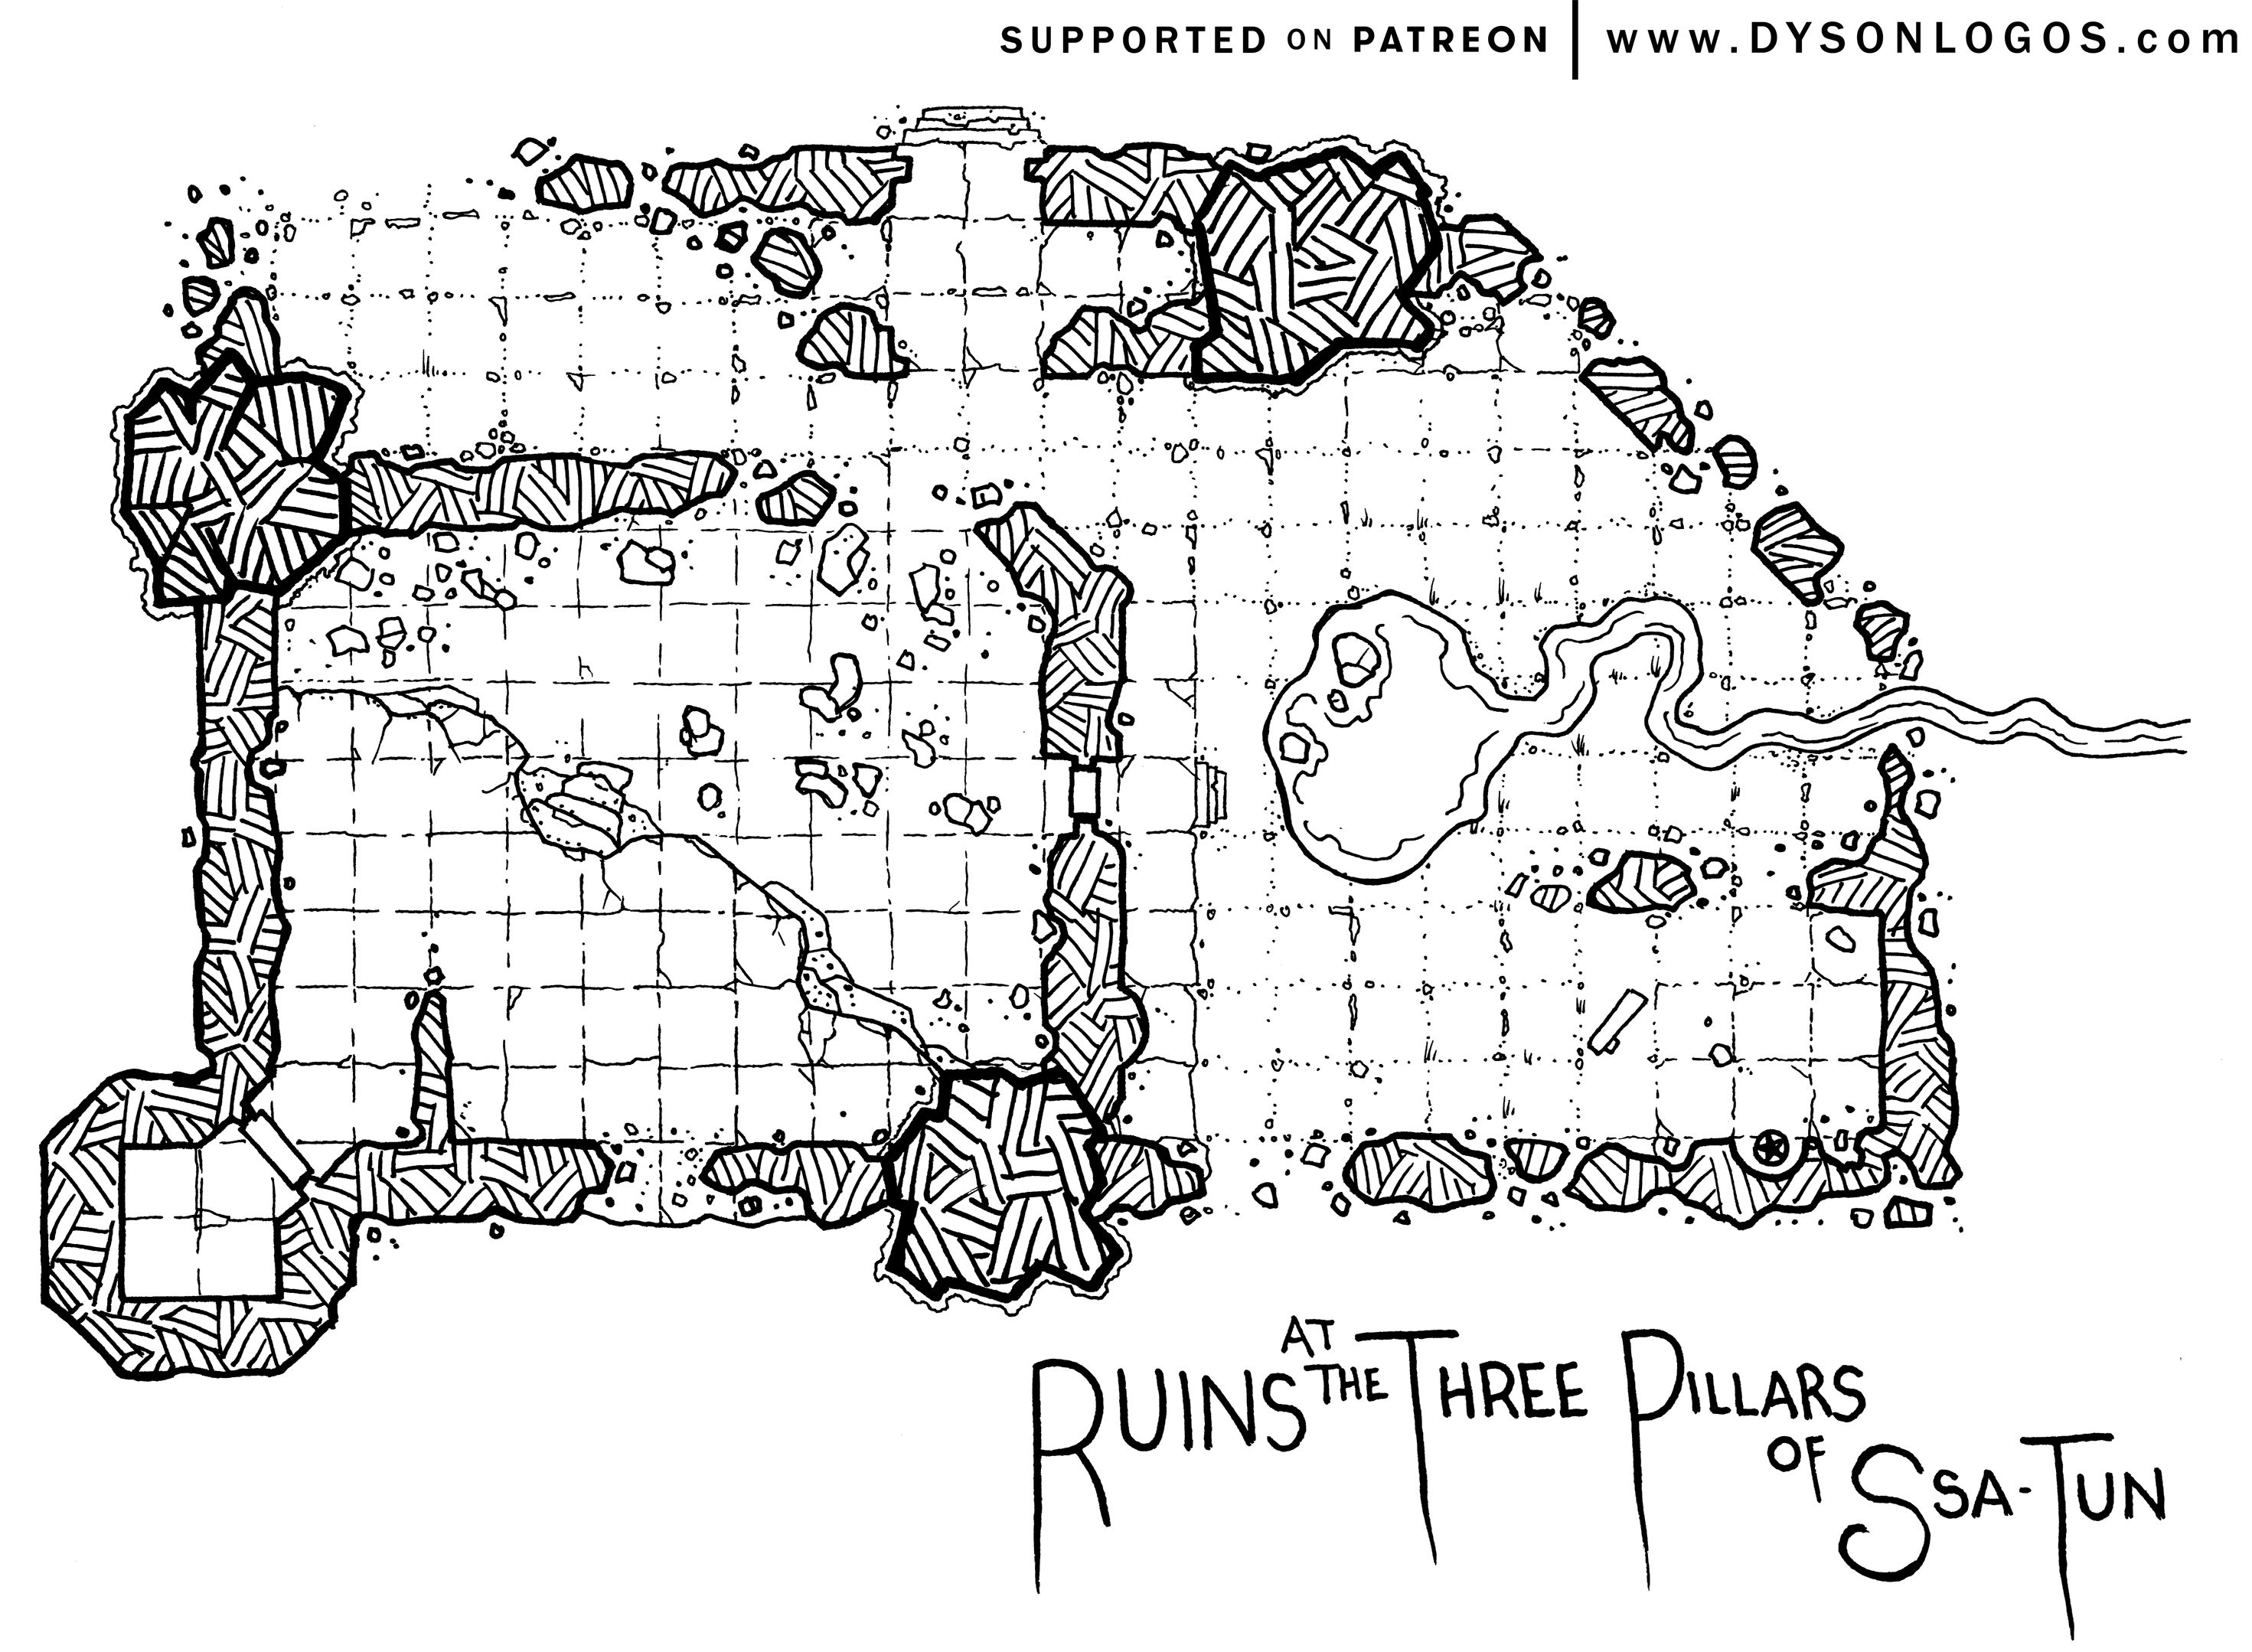 WEB-Ruins-at-the-Three-Pillars-of-Ssa-Tun-Patreon.png